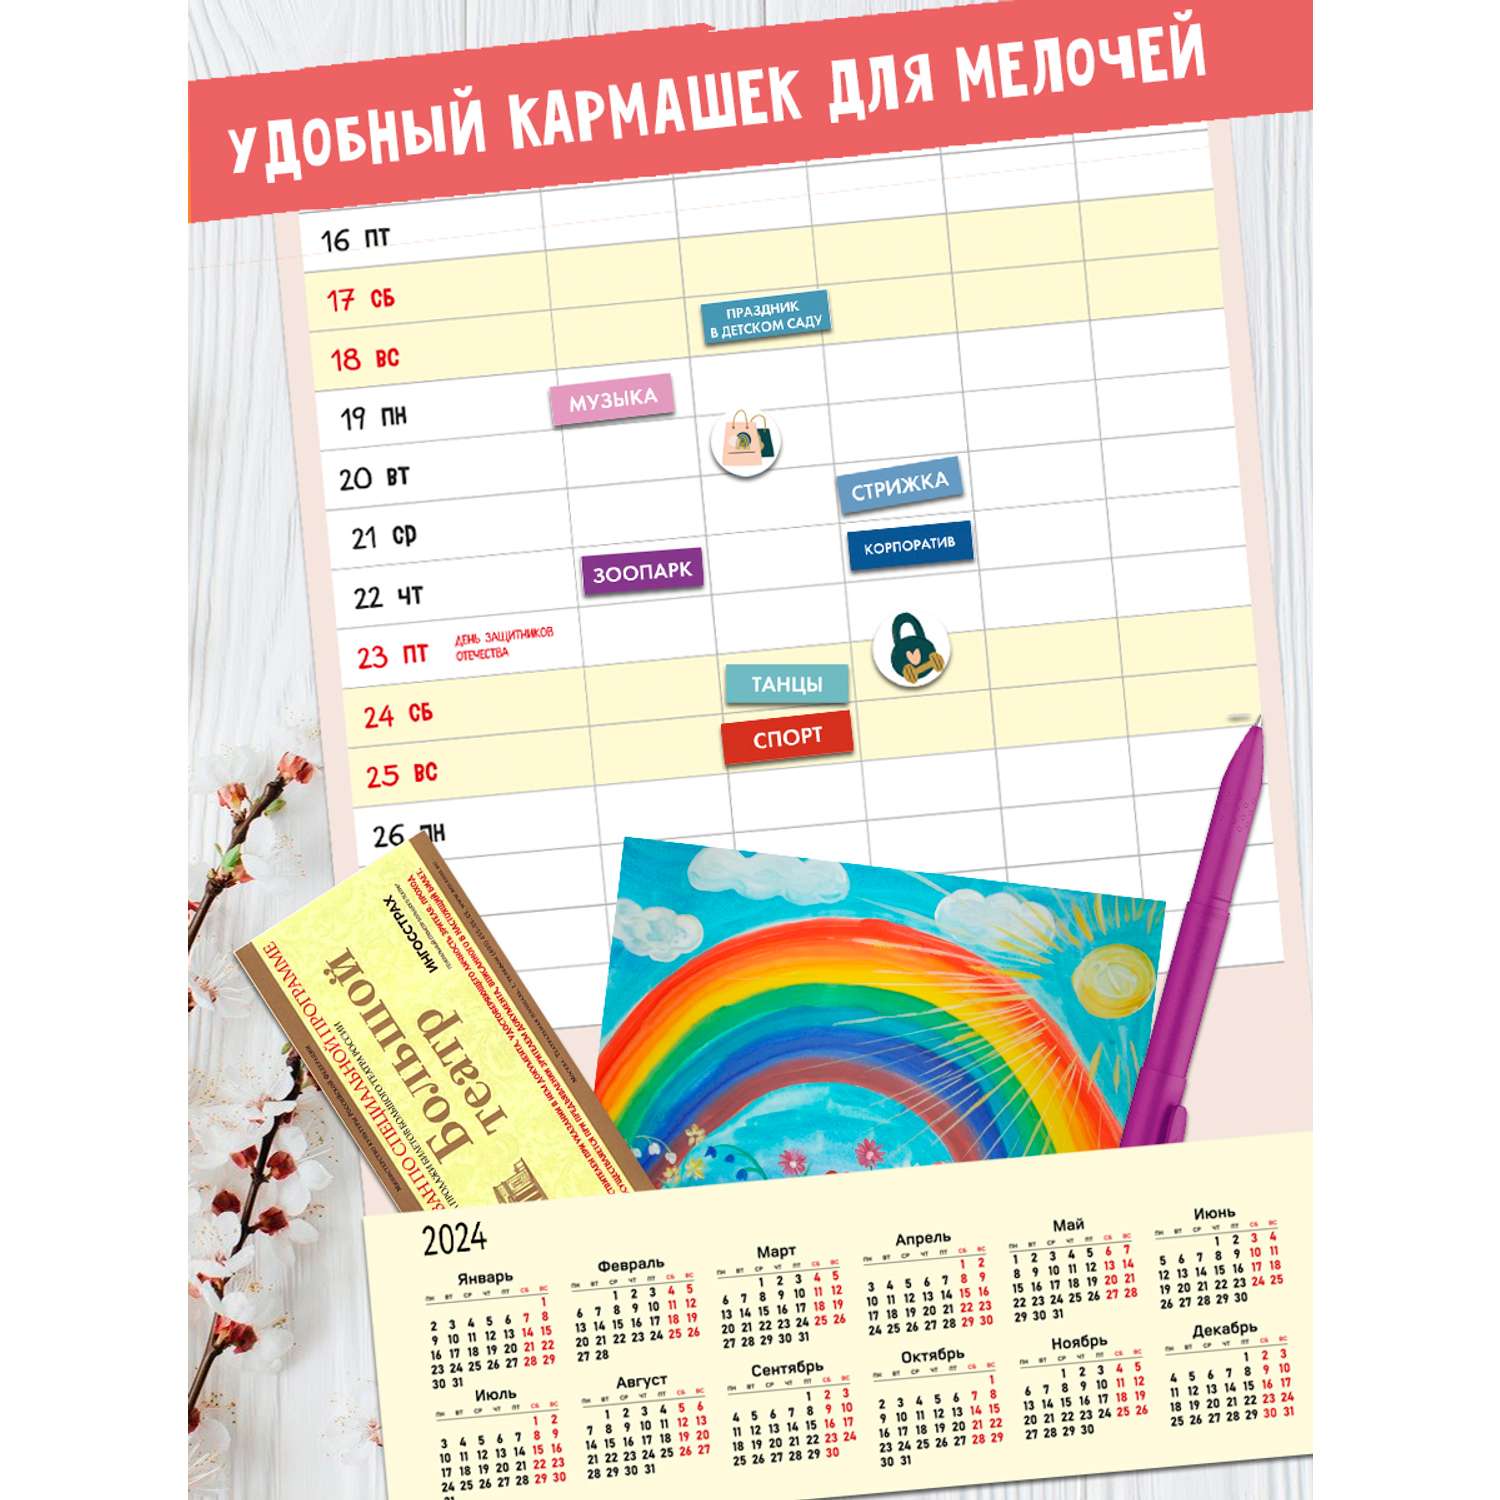 Календарь праздников в Украине - что и когда будем отмечать - даты